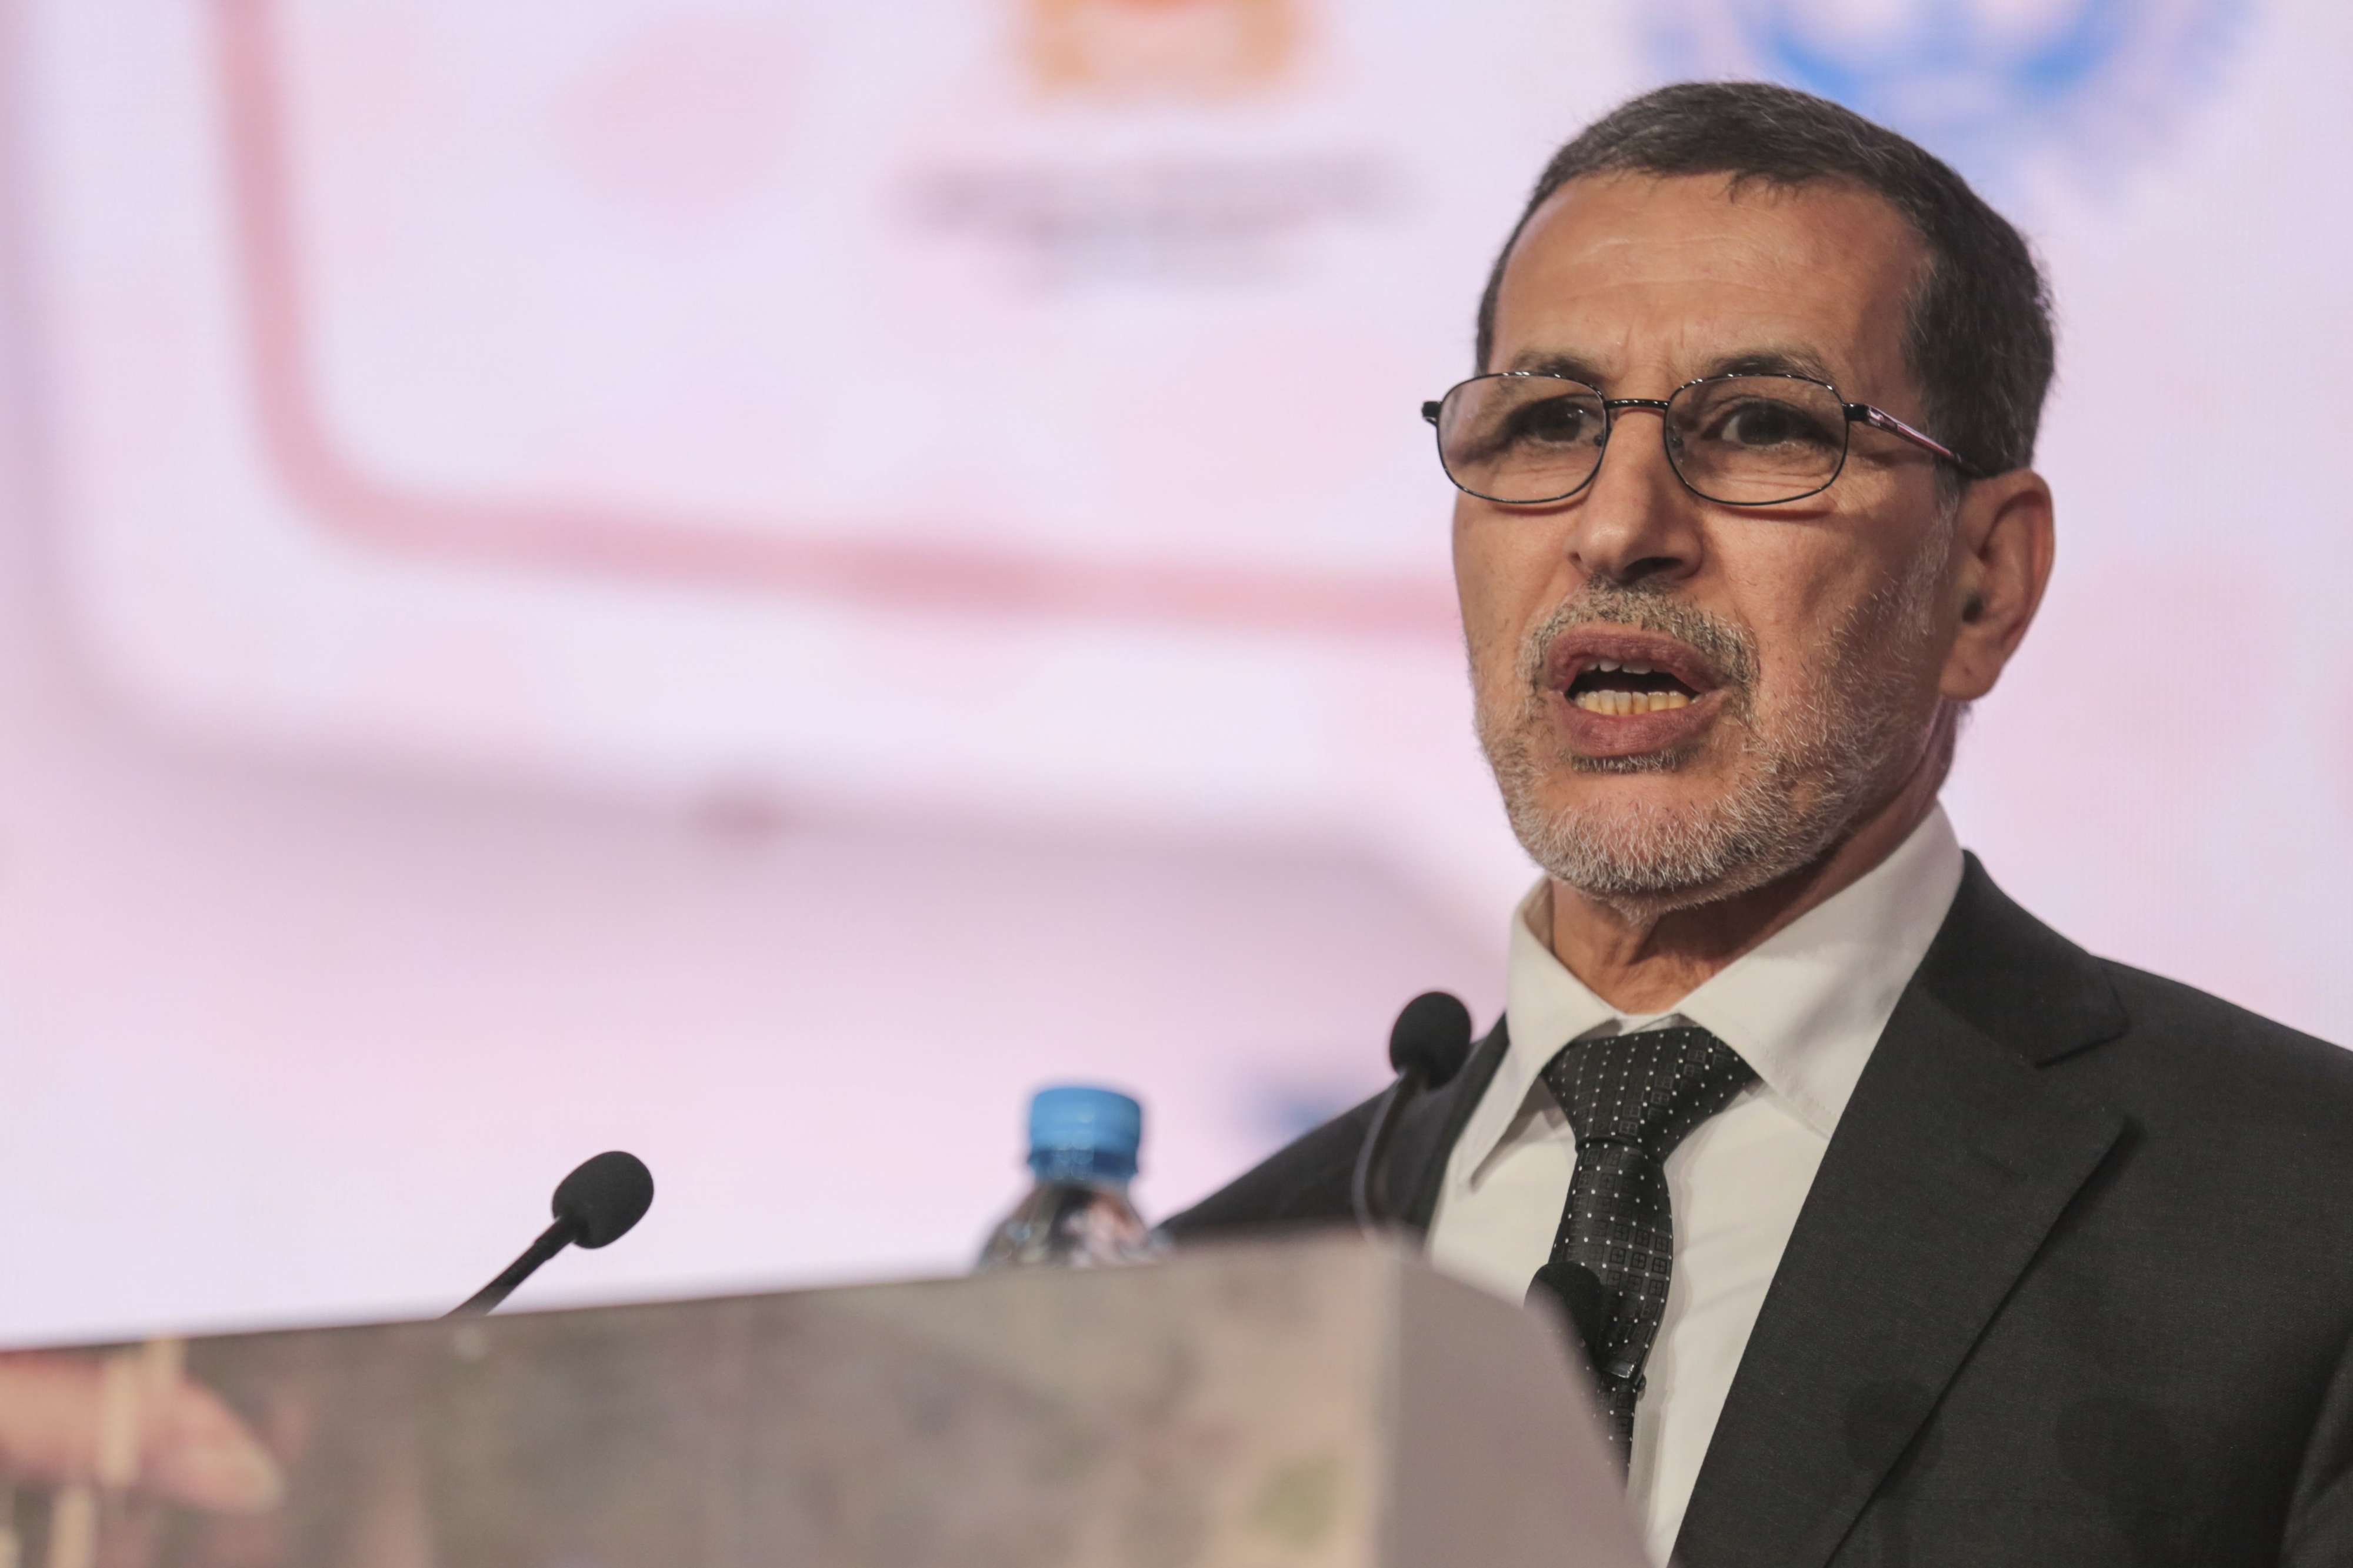 رئيس الحكومة المغربية سعدالدين العثماني